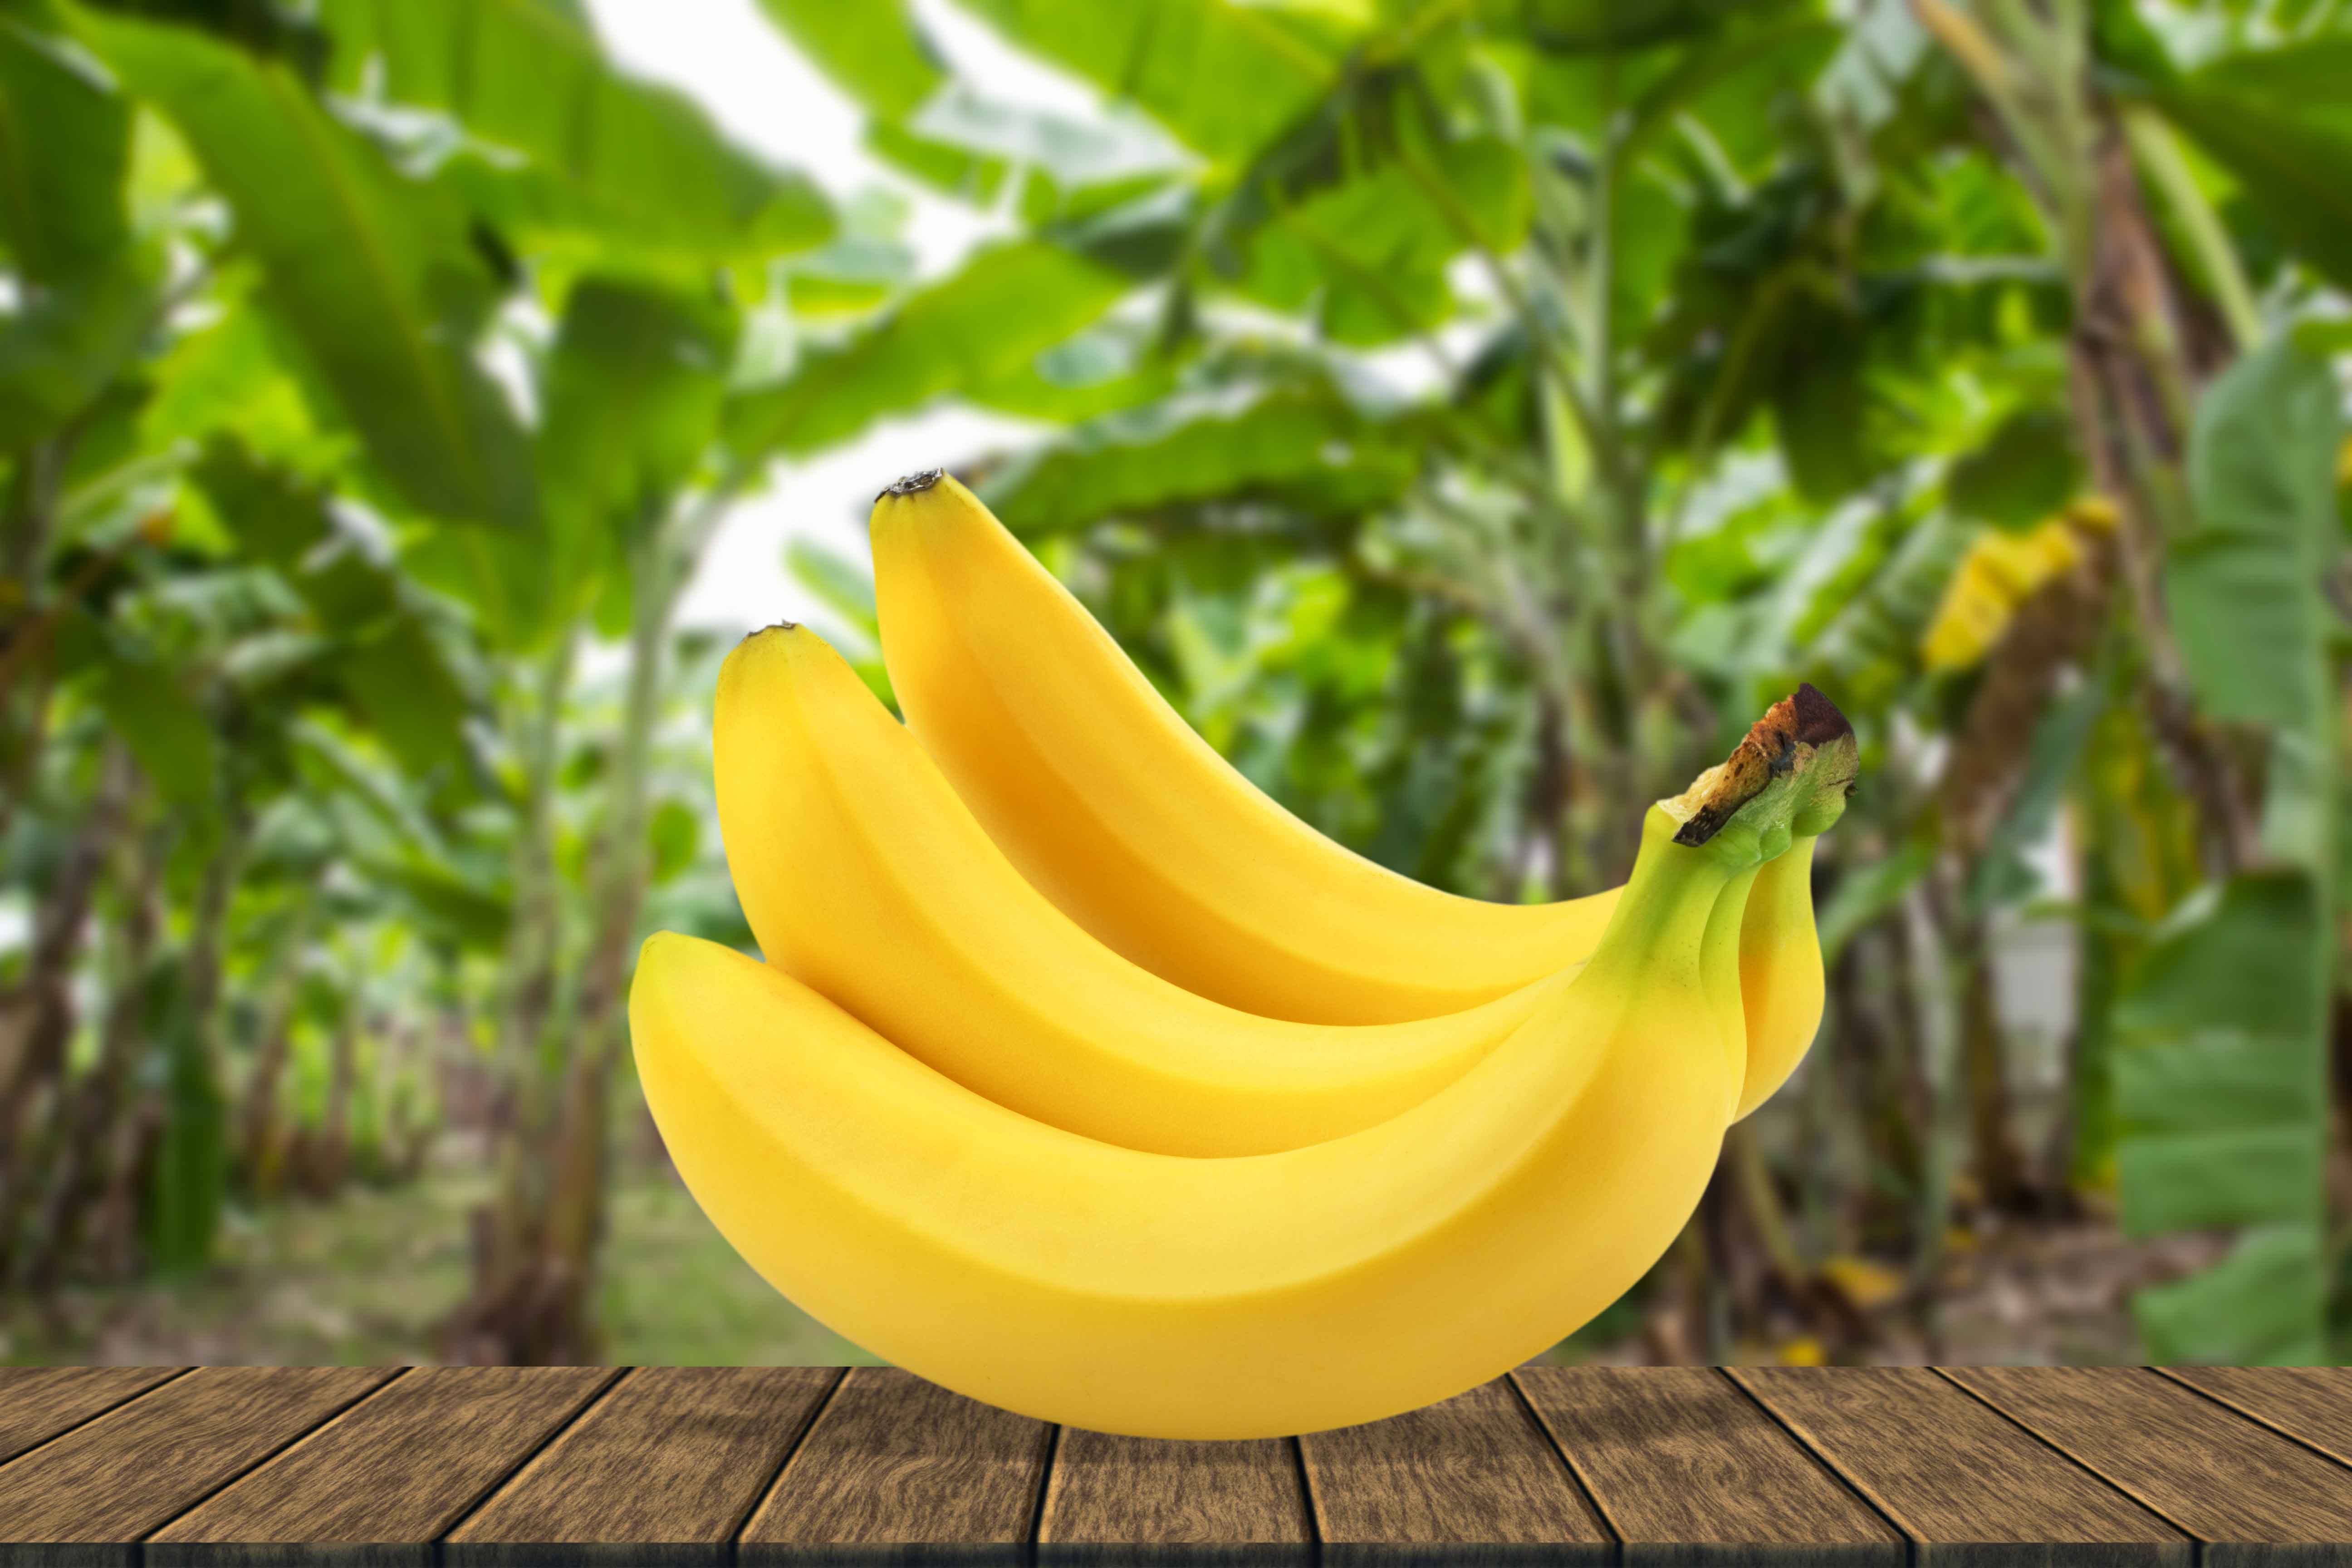 Freshpoint-produce-101-banana-v2